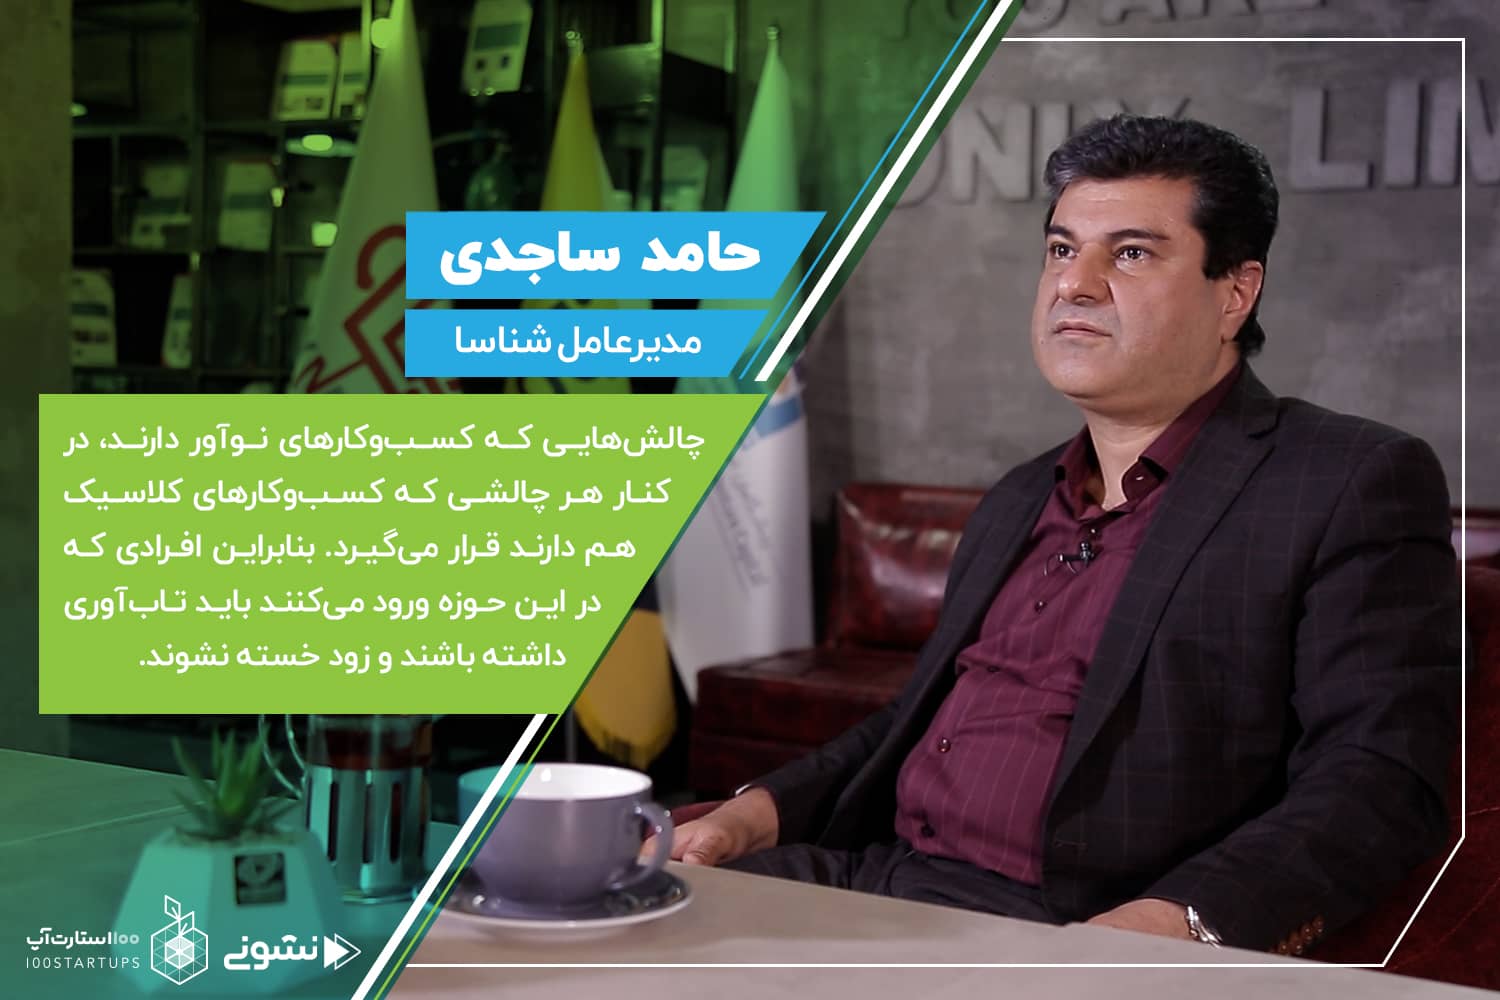 مصاحبه با حامد ساجدی، مدیرعامل شناسا در مقاله کافه نشونی در سایت 100استارتاپ